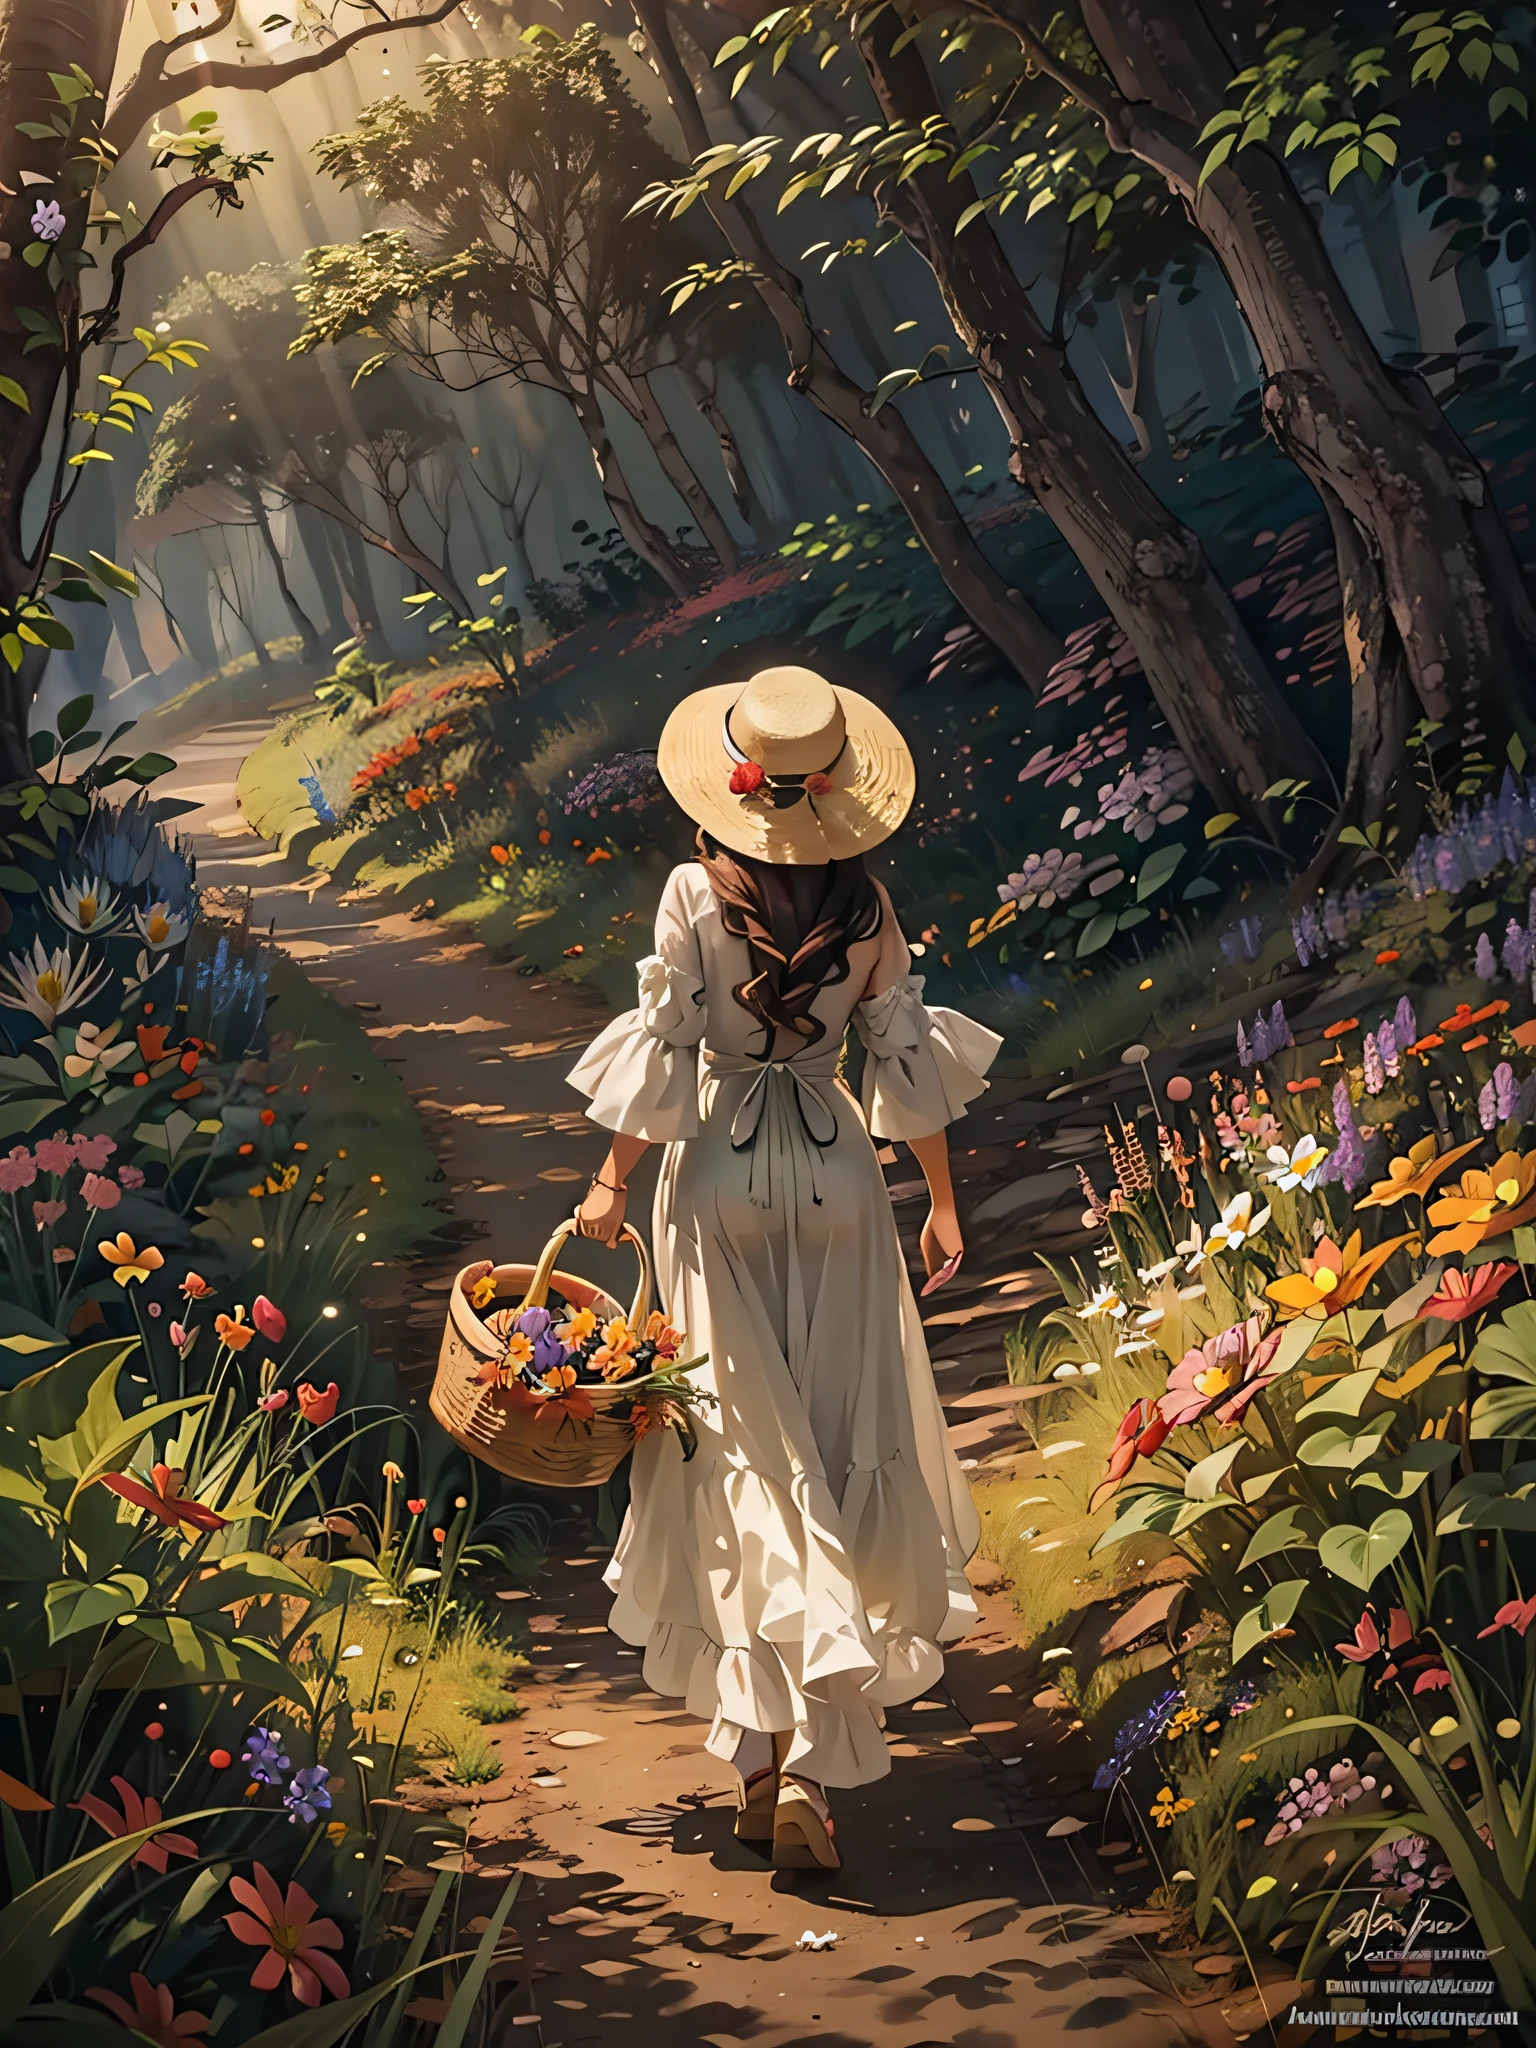 Il y a une vue arrière d&#39;une belle fille avec un panier marchant sur un chemin d&#39;herbe dans une forêt faiblement éclairée、Elle porte un chapeau de paille et l&#39;utilise comme ornement floral pour ses cheveux.、A la sortie de la forêt où elle se promène, on voit un paradis de fleurs s&#39;étaler dans une lumière éblouissante.、Regarde en arrière、chef-d&#39;œuvre